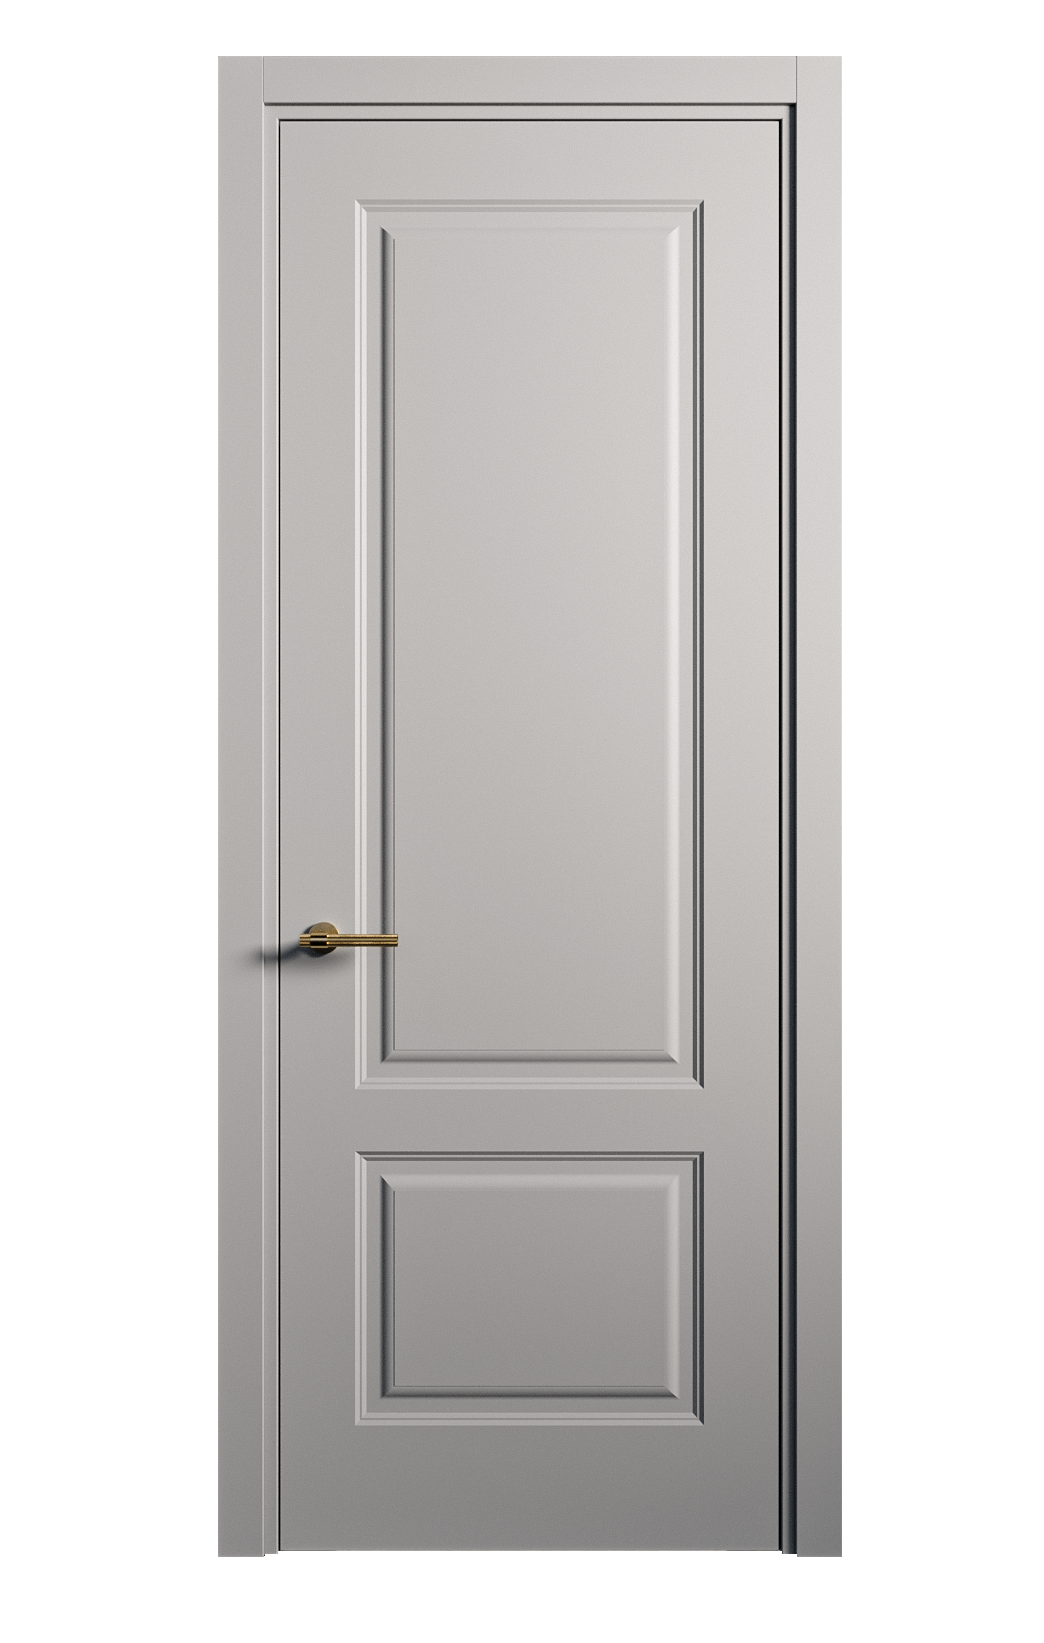 Межкомнатная дверь Вита-1 глухая эмаль ral 7040 26245